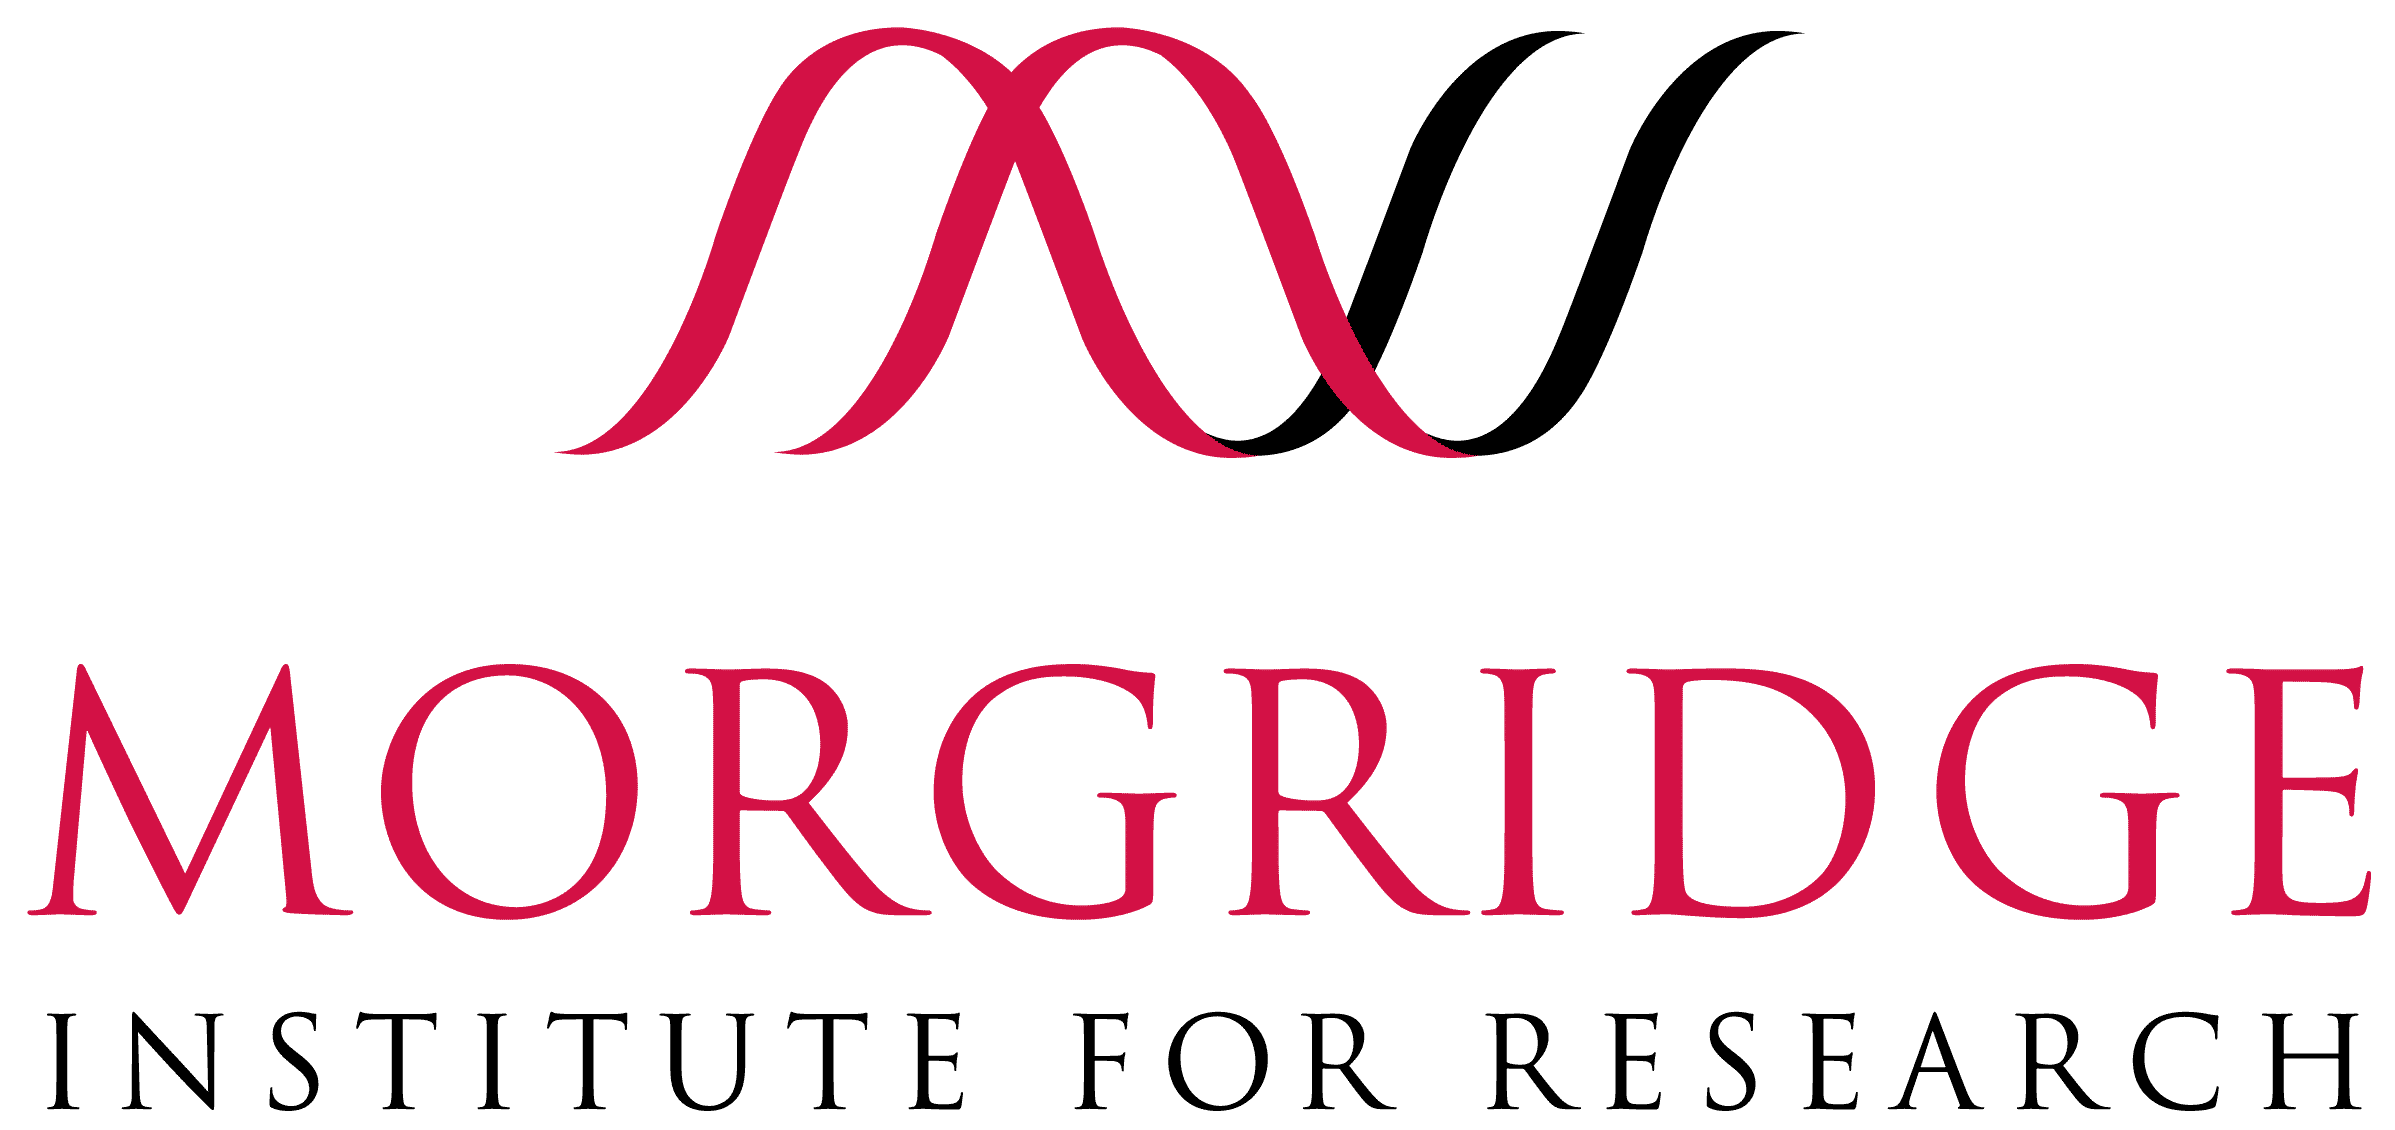 Morgridge Institute